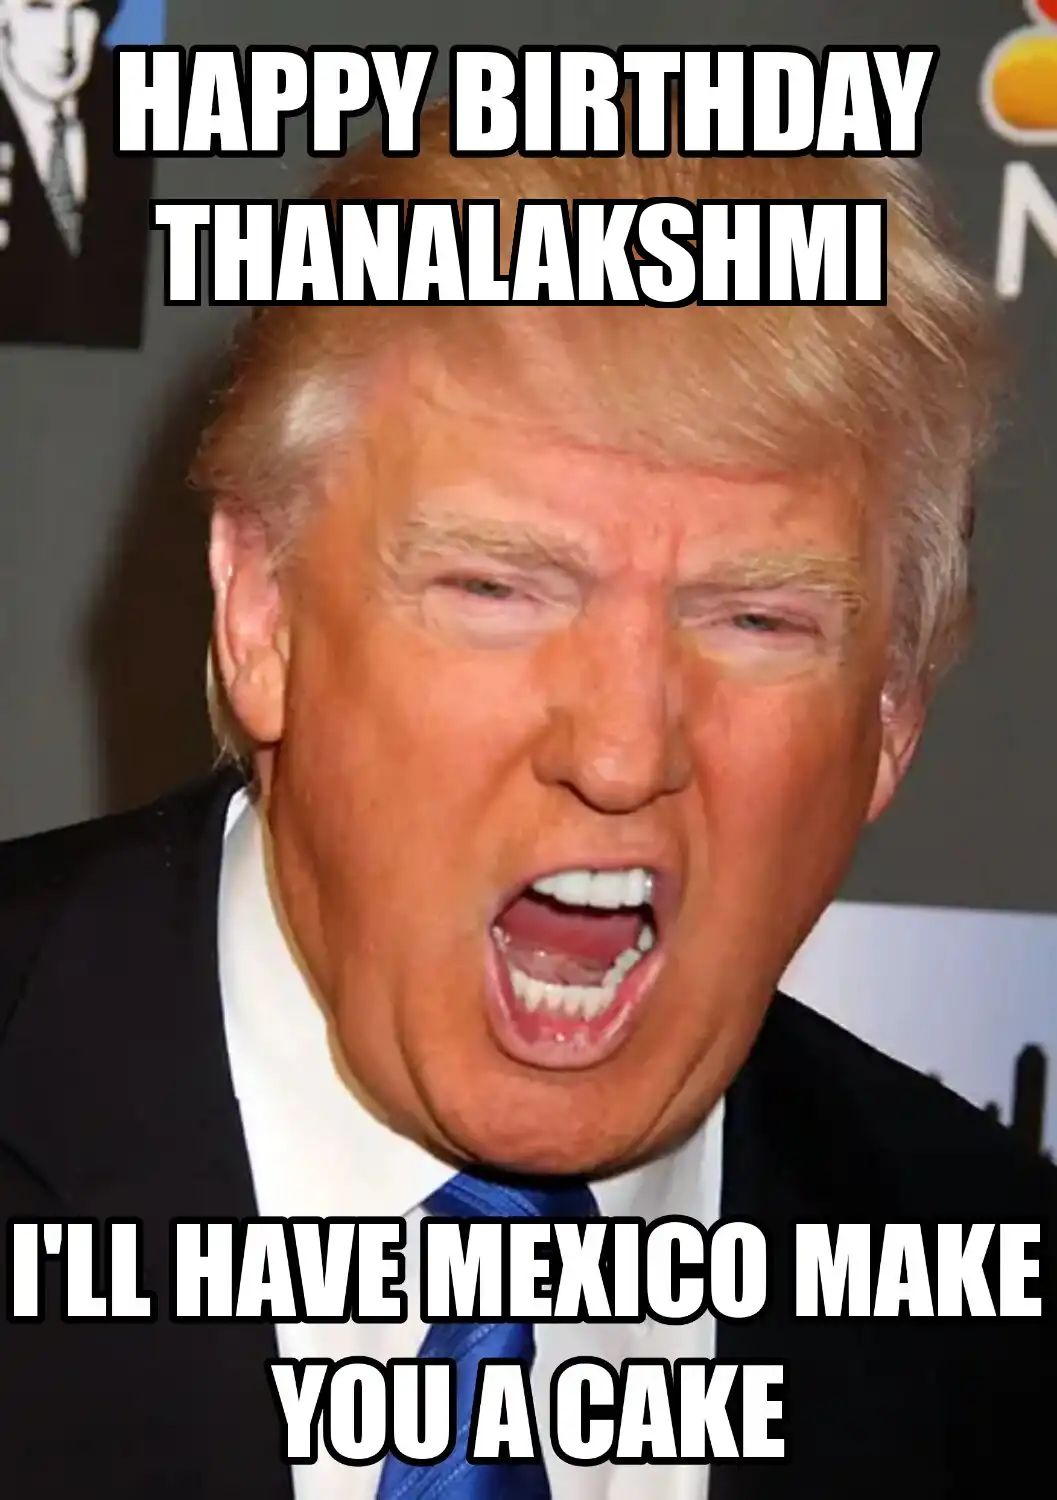 Happy Birthday Thanalakshmi Mexico Make You A Cake Meme